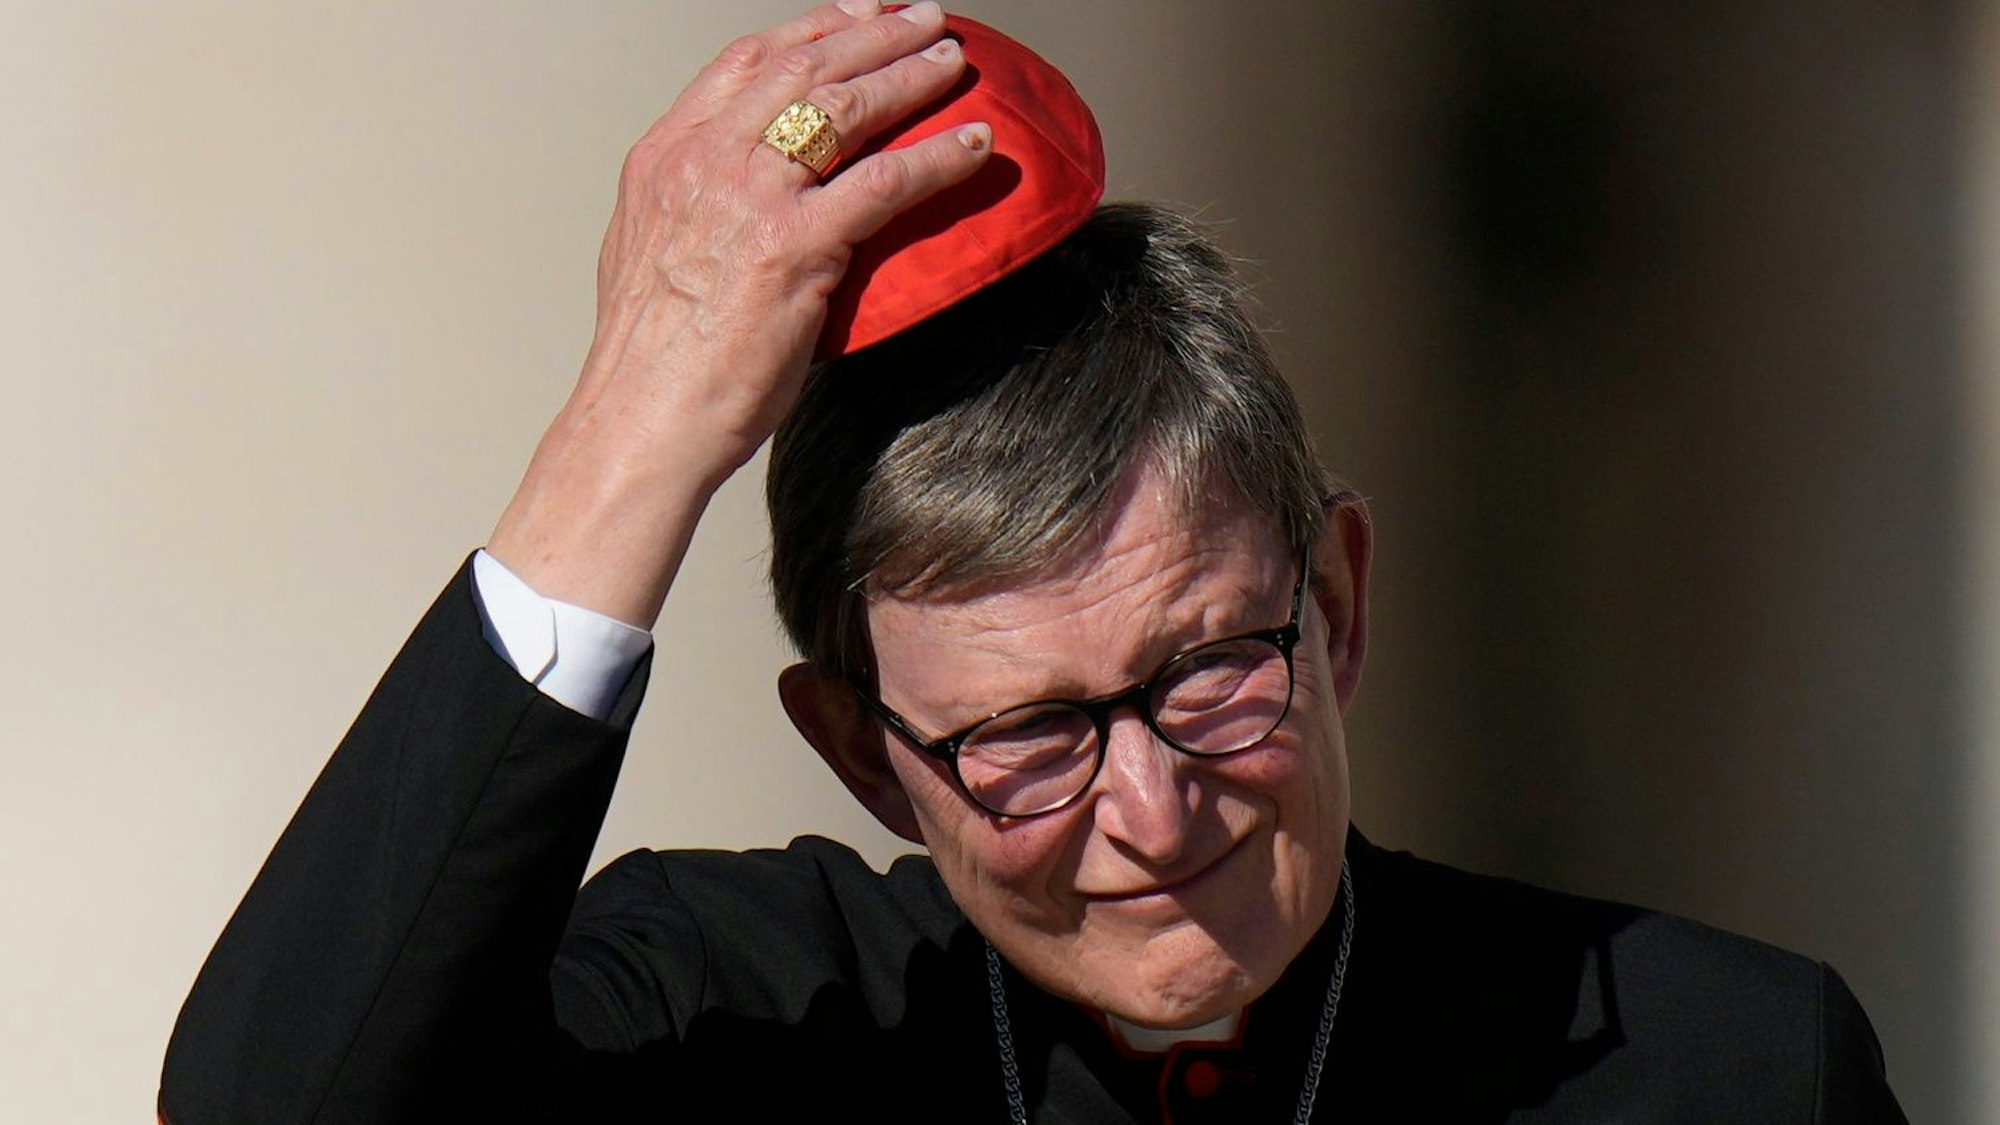 Kardinal Rainer Maria Woelki in schwarzem Talar und einer roten Kappe, dem Pileolus, vor unscharfem Hintergrund. Mit einer Hand hebt er die Kappe in die Höhe. Vor der Brust hängt ein silbernes Kruzifix.